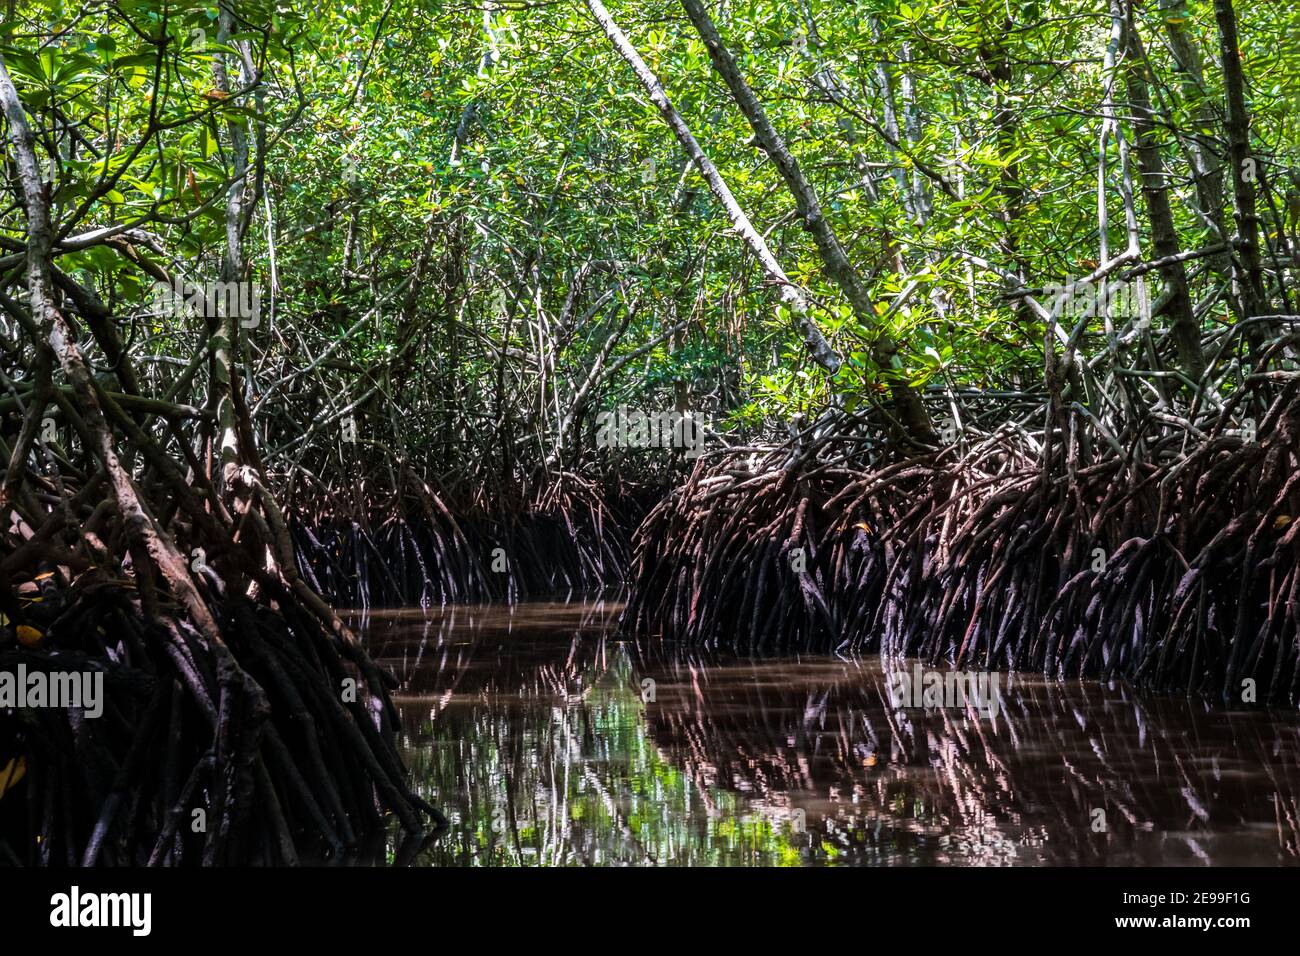 Forêt de mangroves sur l'île de Bali, Indonésie. Les racines brunes s'élèvent de l'eau, reflétant la forêt au-dessus. Un canal ouvert serpente dans la jungle Banque D'Images